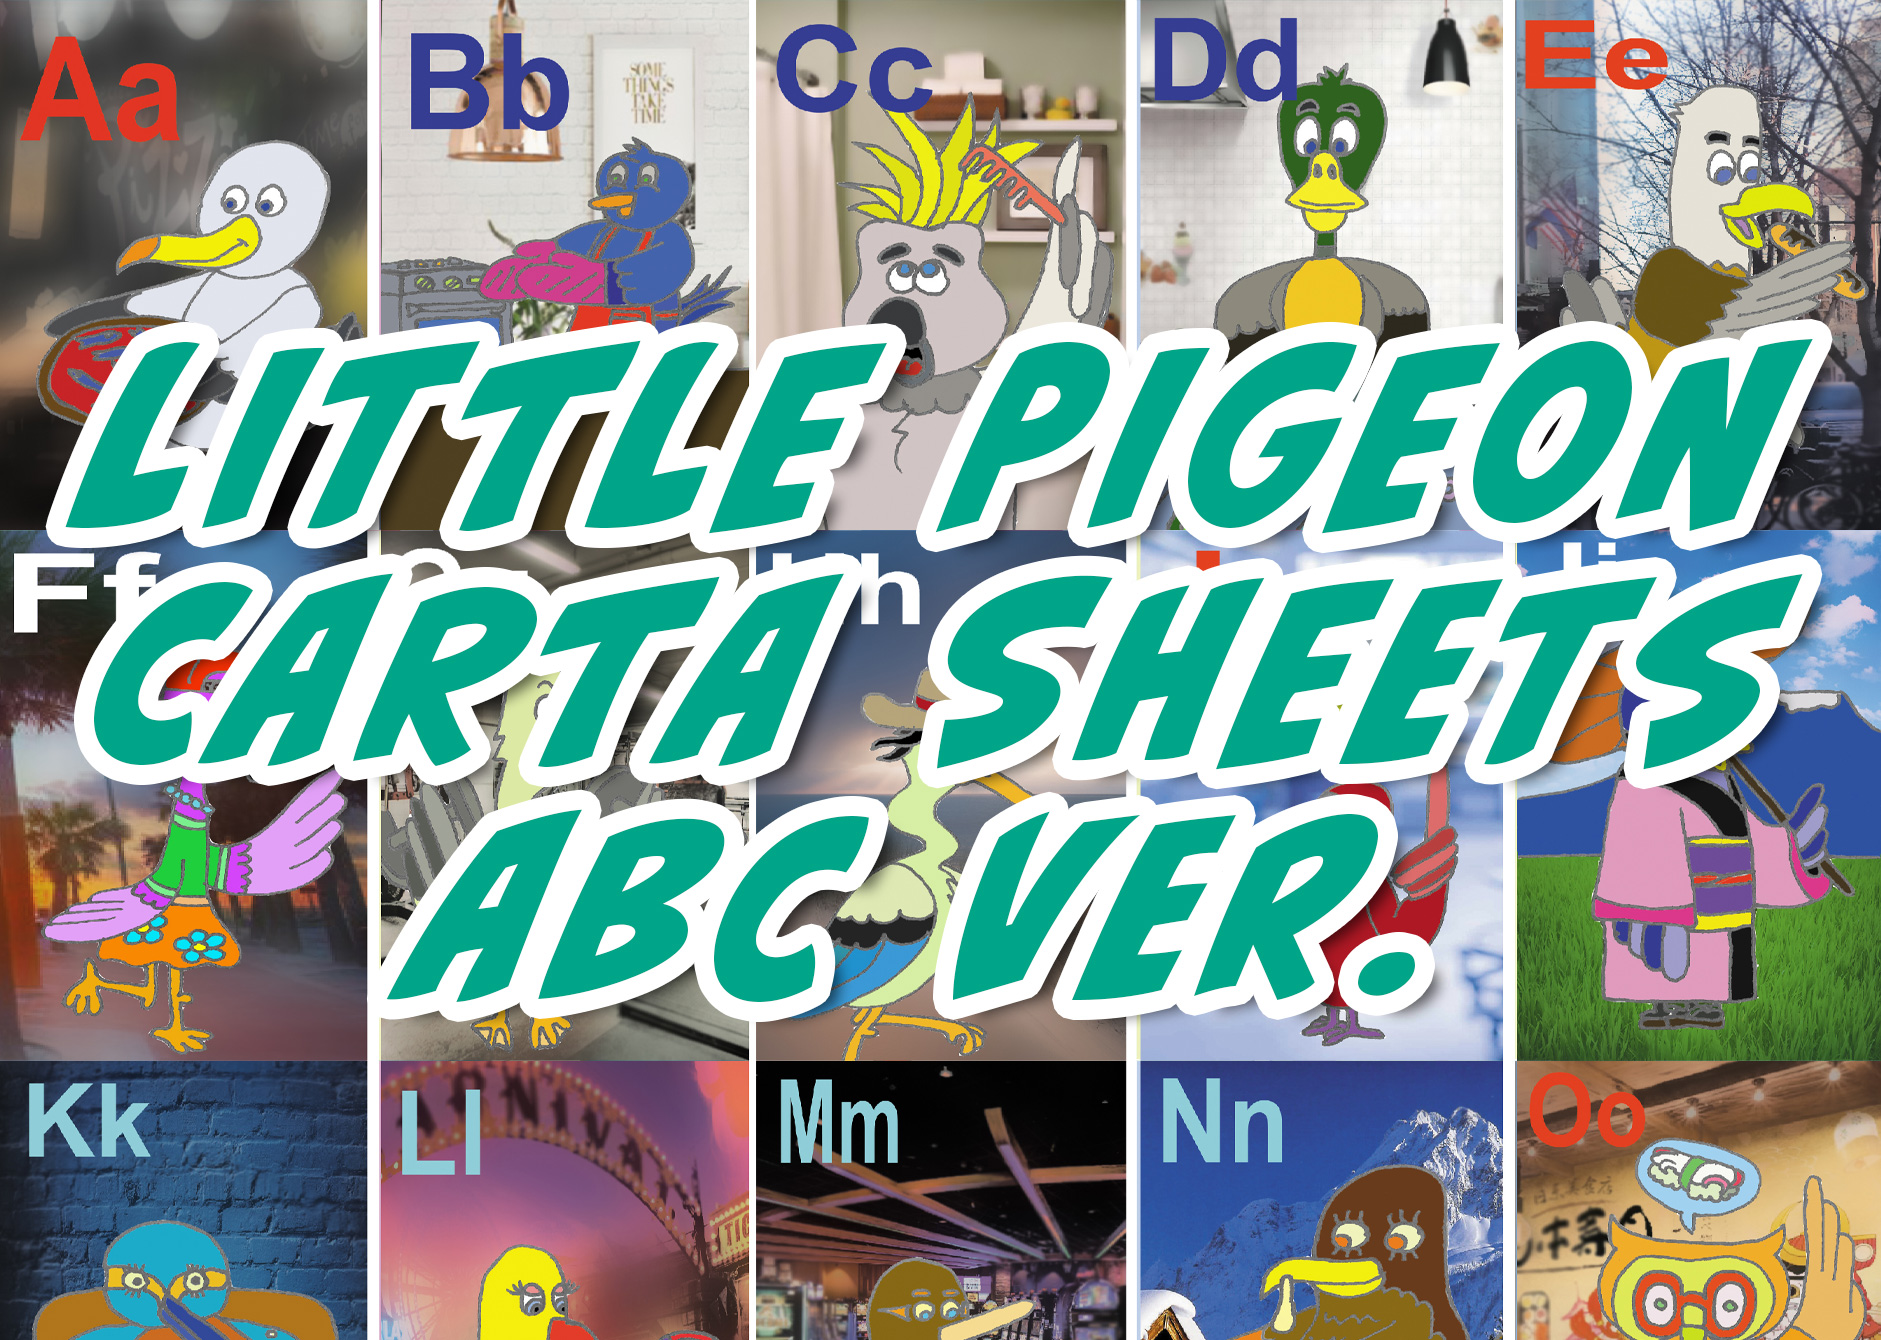 Little Pigeon Carta Sheets